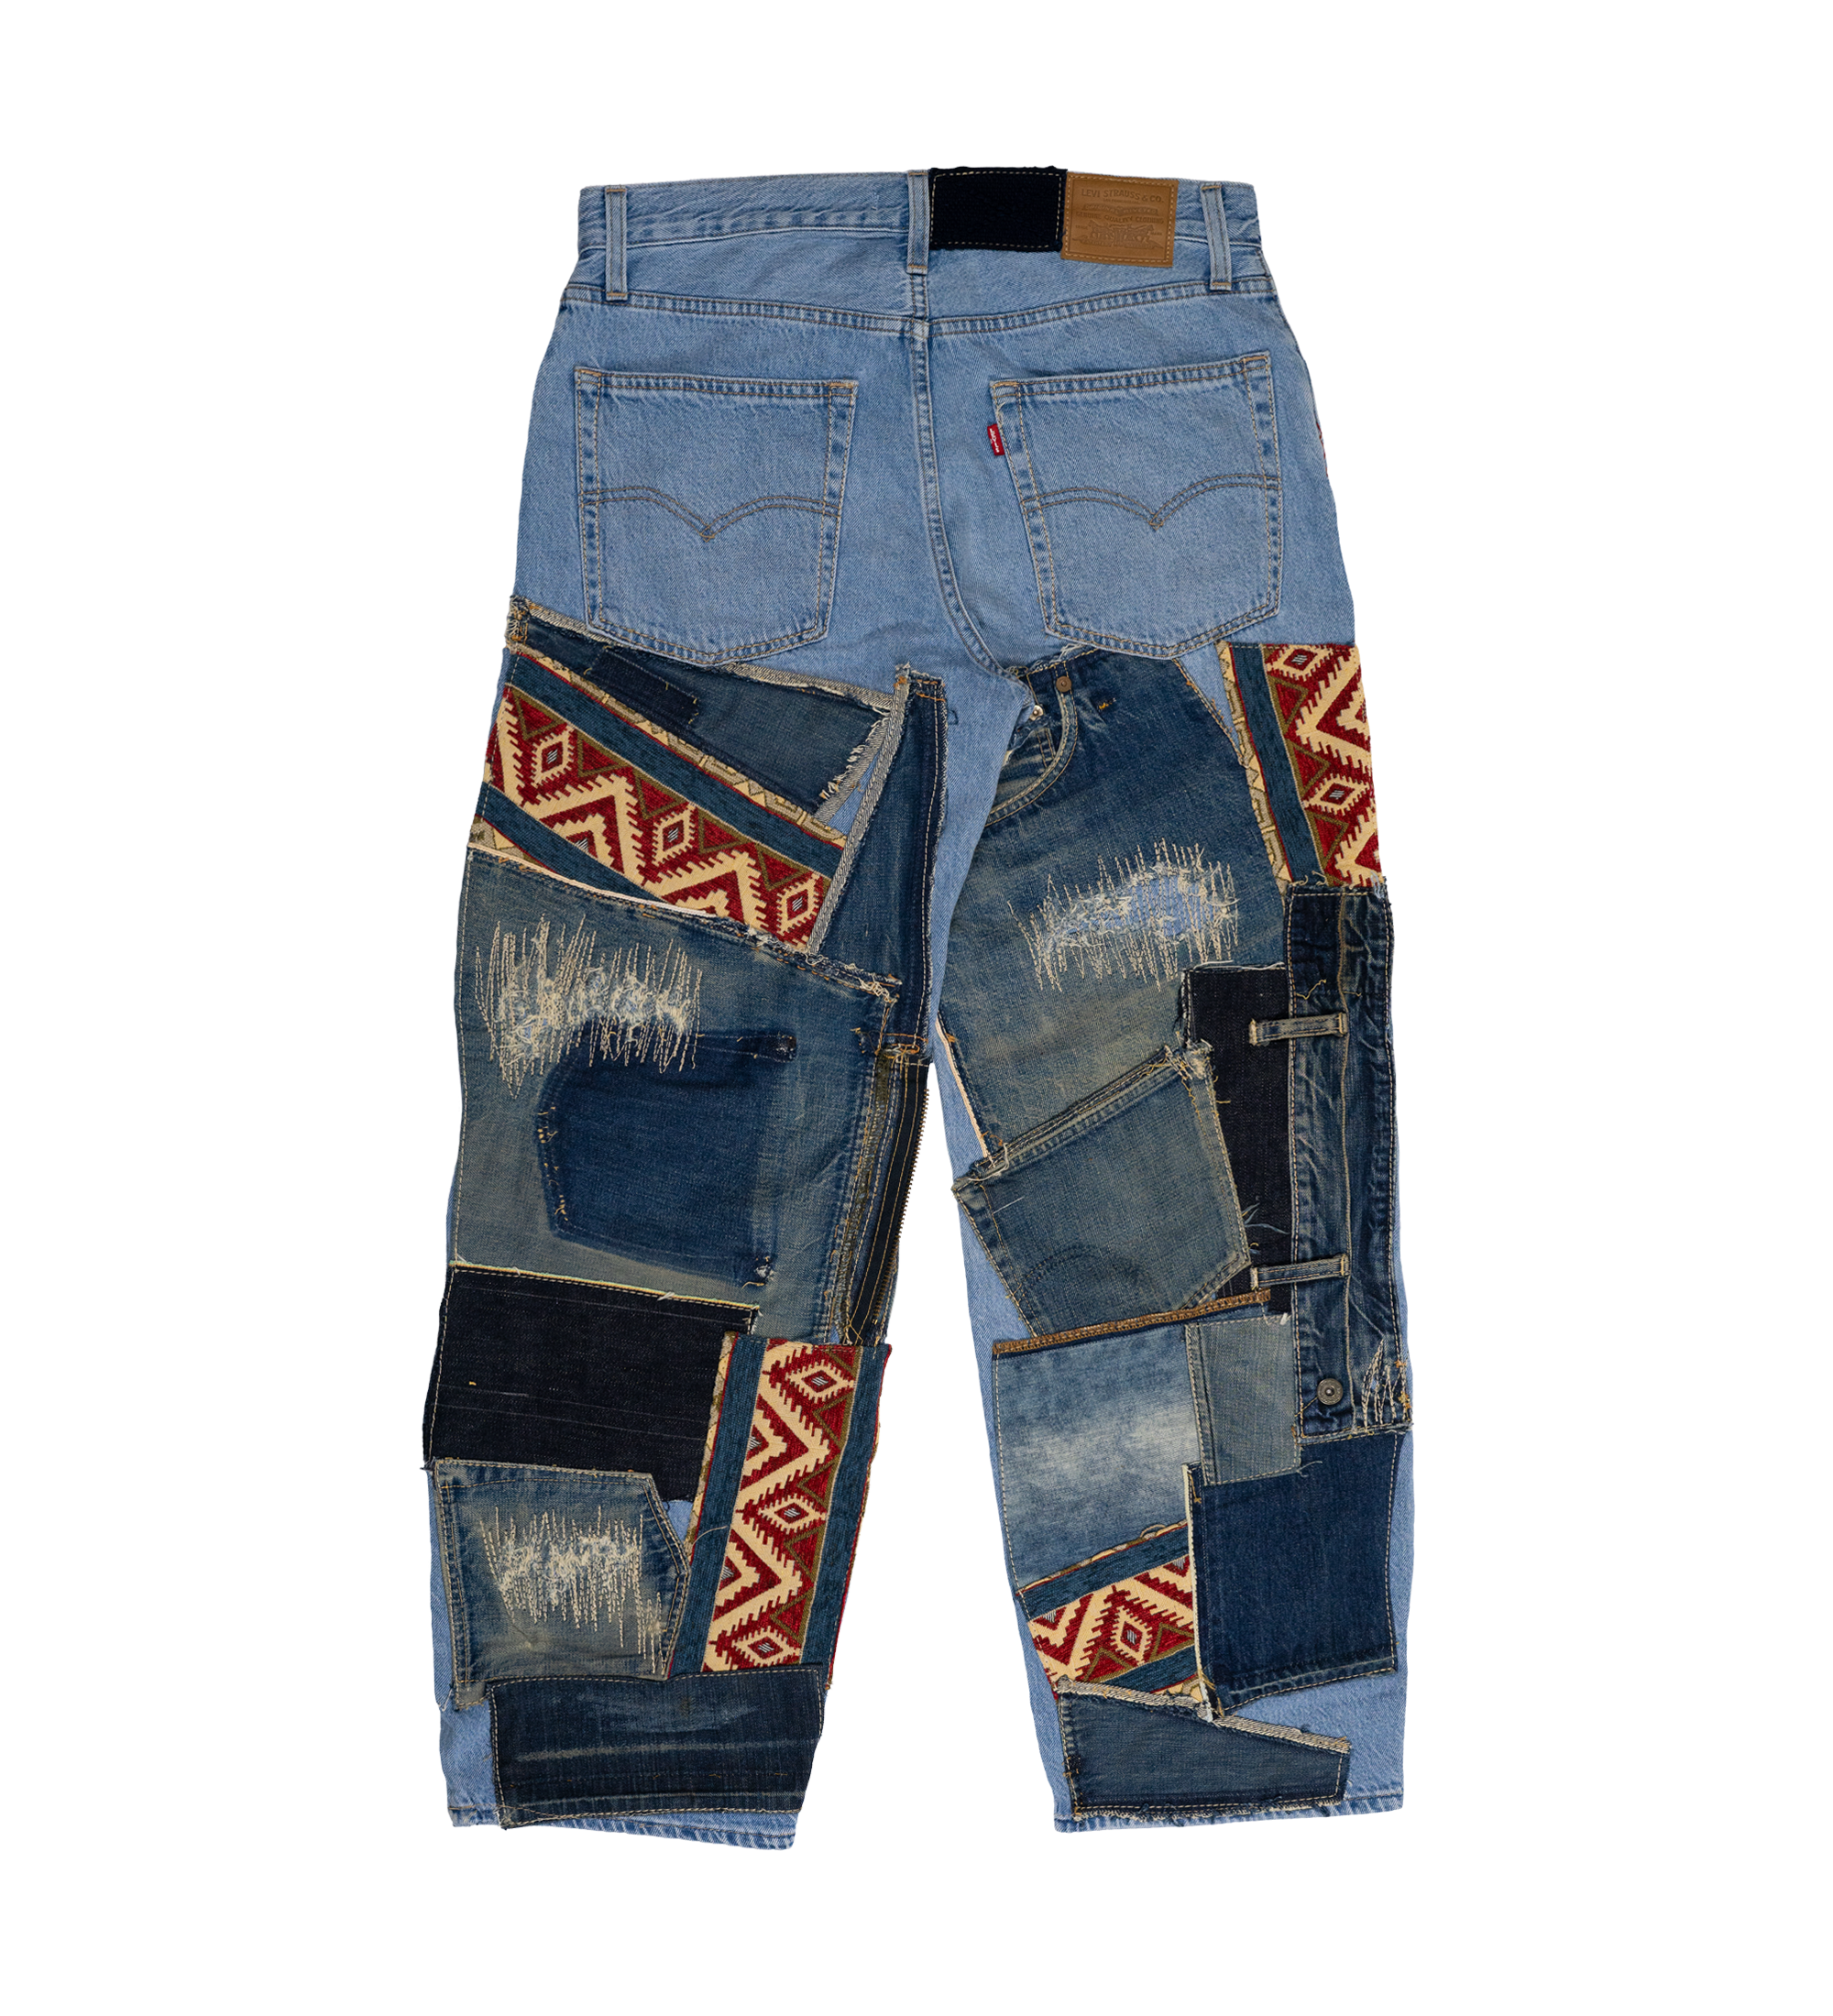 Chota Reworked Denim: Baggy Dad Jeans 02, Tribal Indigo - W29